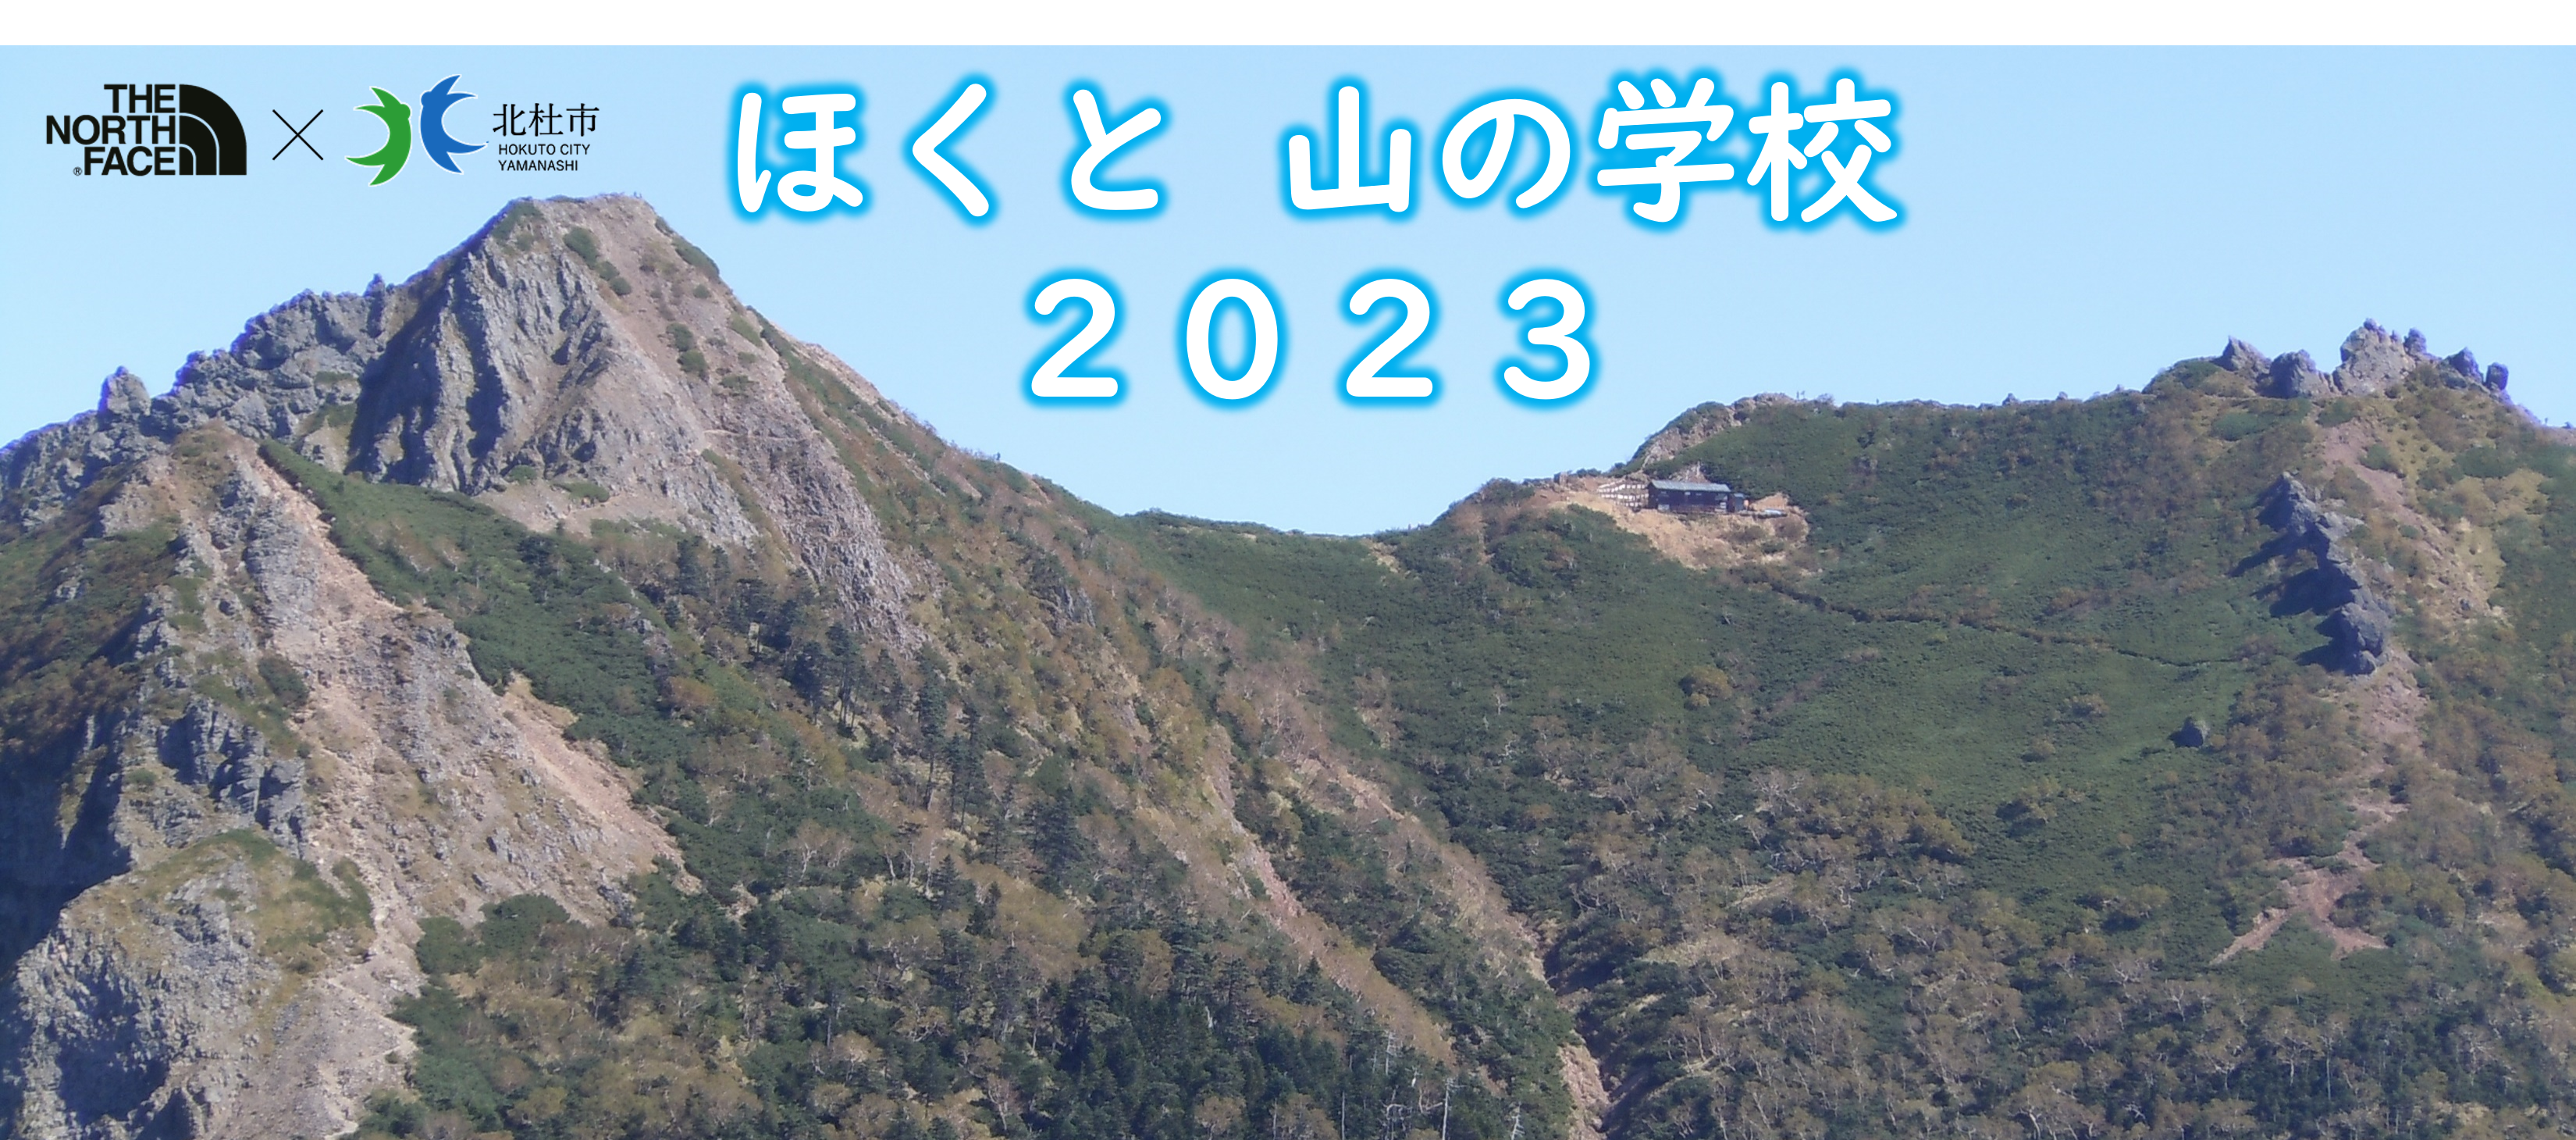 【北杜市×THE NORTH FACE 包括連携事業】ほくと山の学校2023